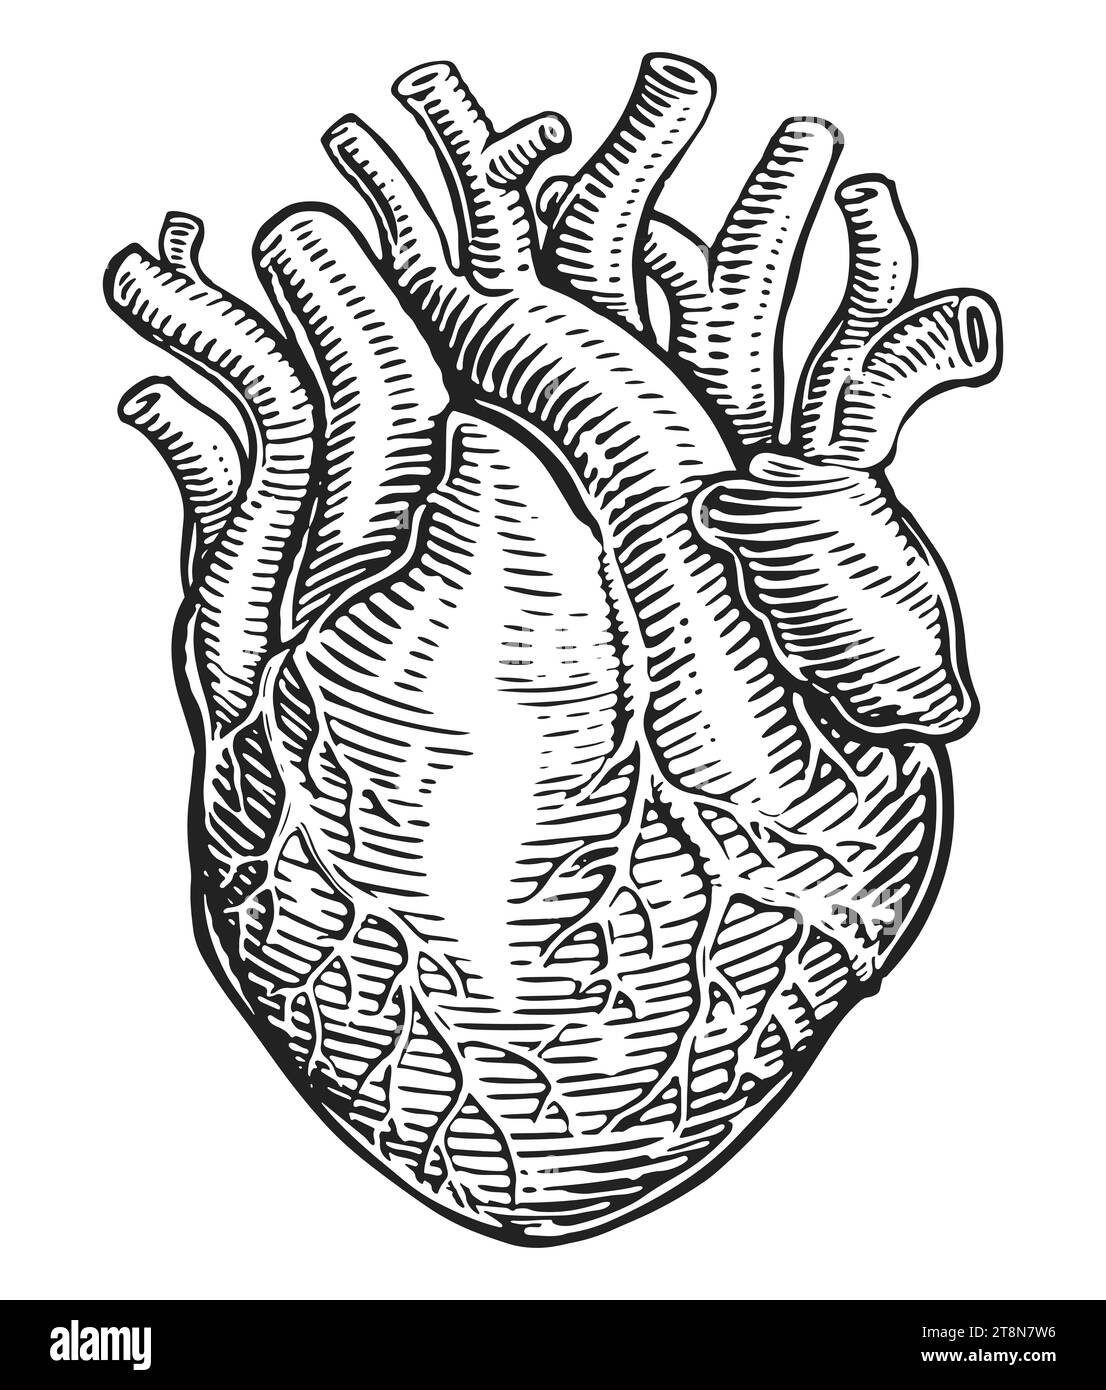 Muscle cardiaque humain dessiné à la main et vaisseaux sanguins dans le style de gravure vintage. Anatomie, illustration d'esquisse Banque D'Images